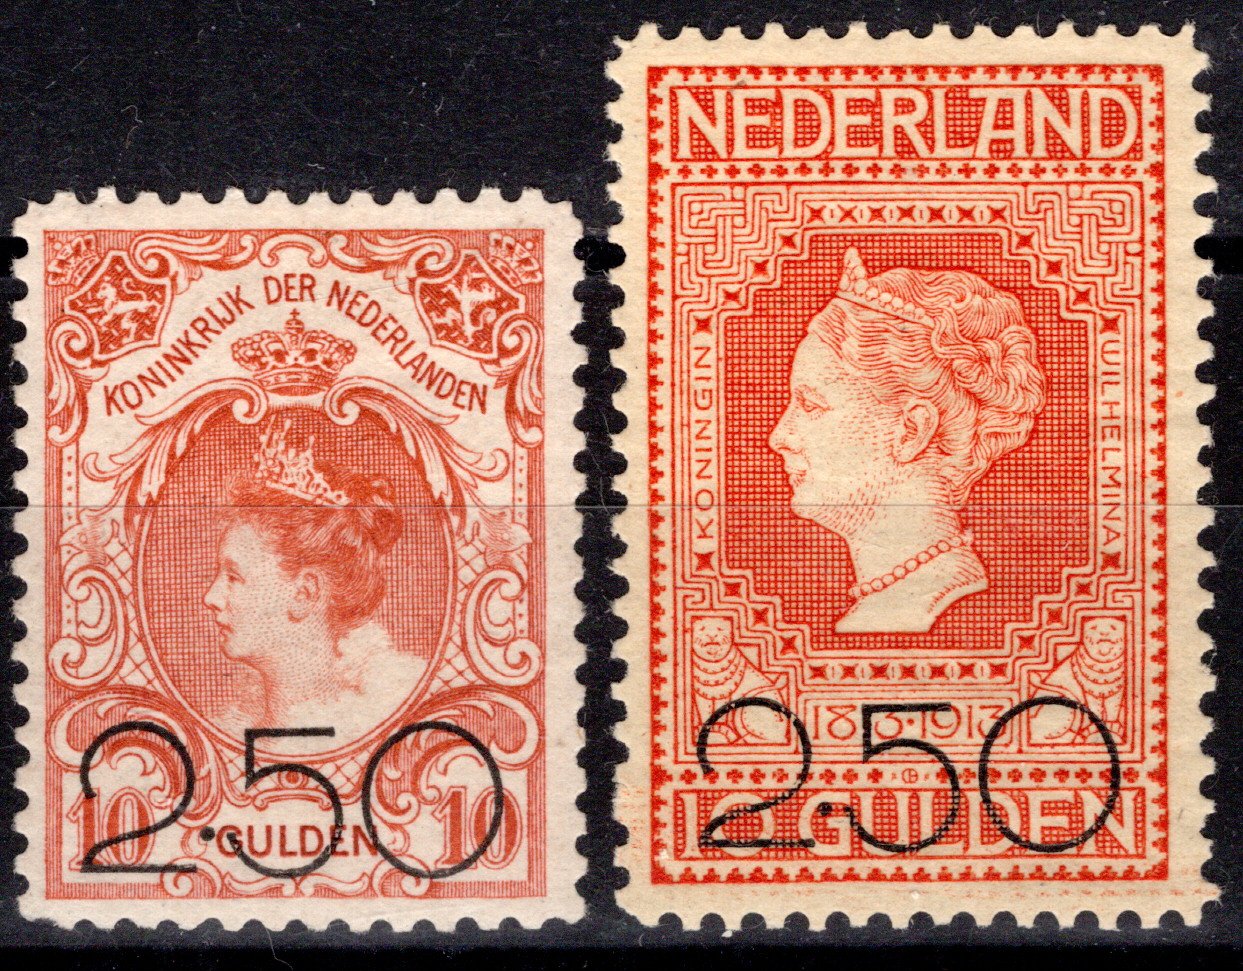 Lot 1097 - Netherlands & Colonies Netherlands -  Georg Bühler Briefmarken Auktionen GmbH Georg Bühler 336 auction